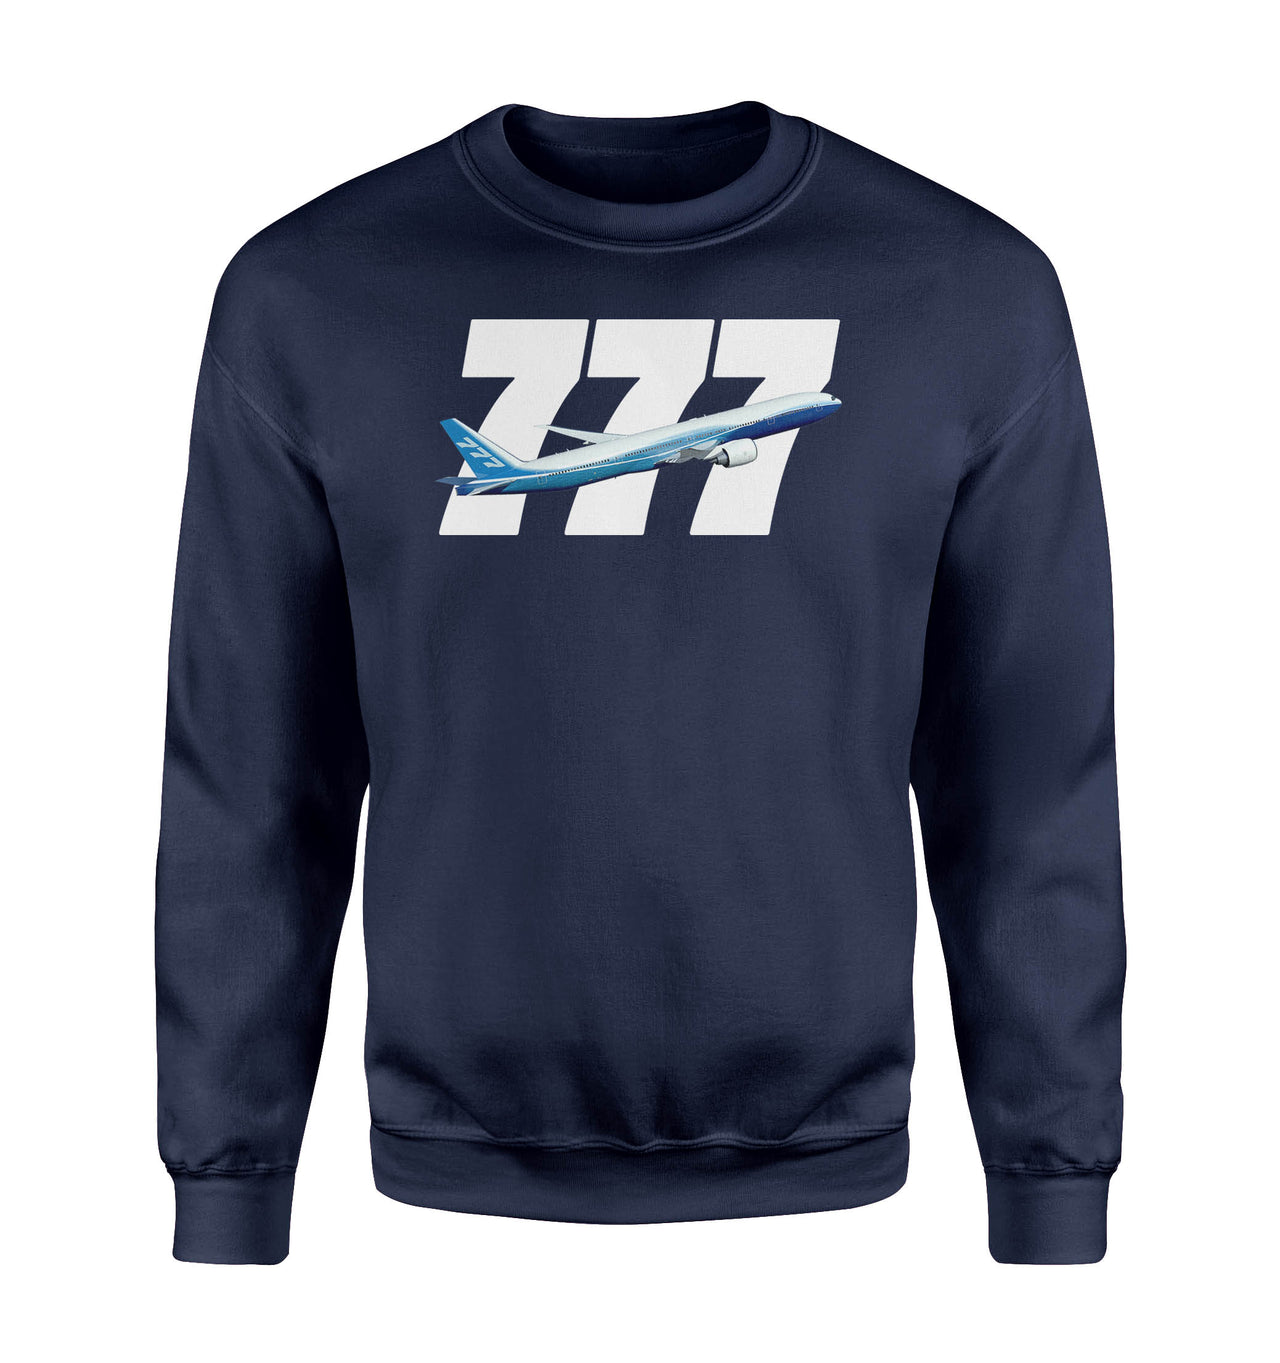 Super Boeing 777 Designed Sweatshirts